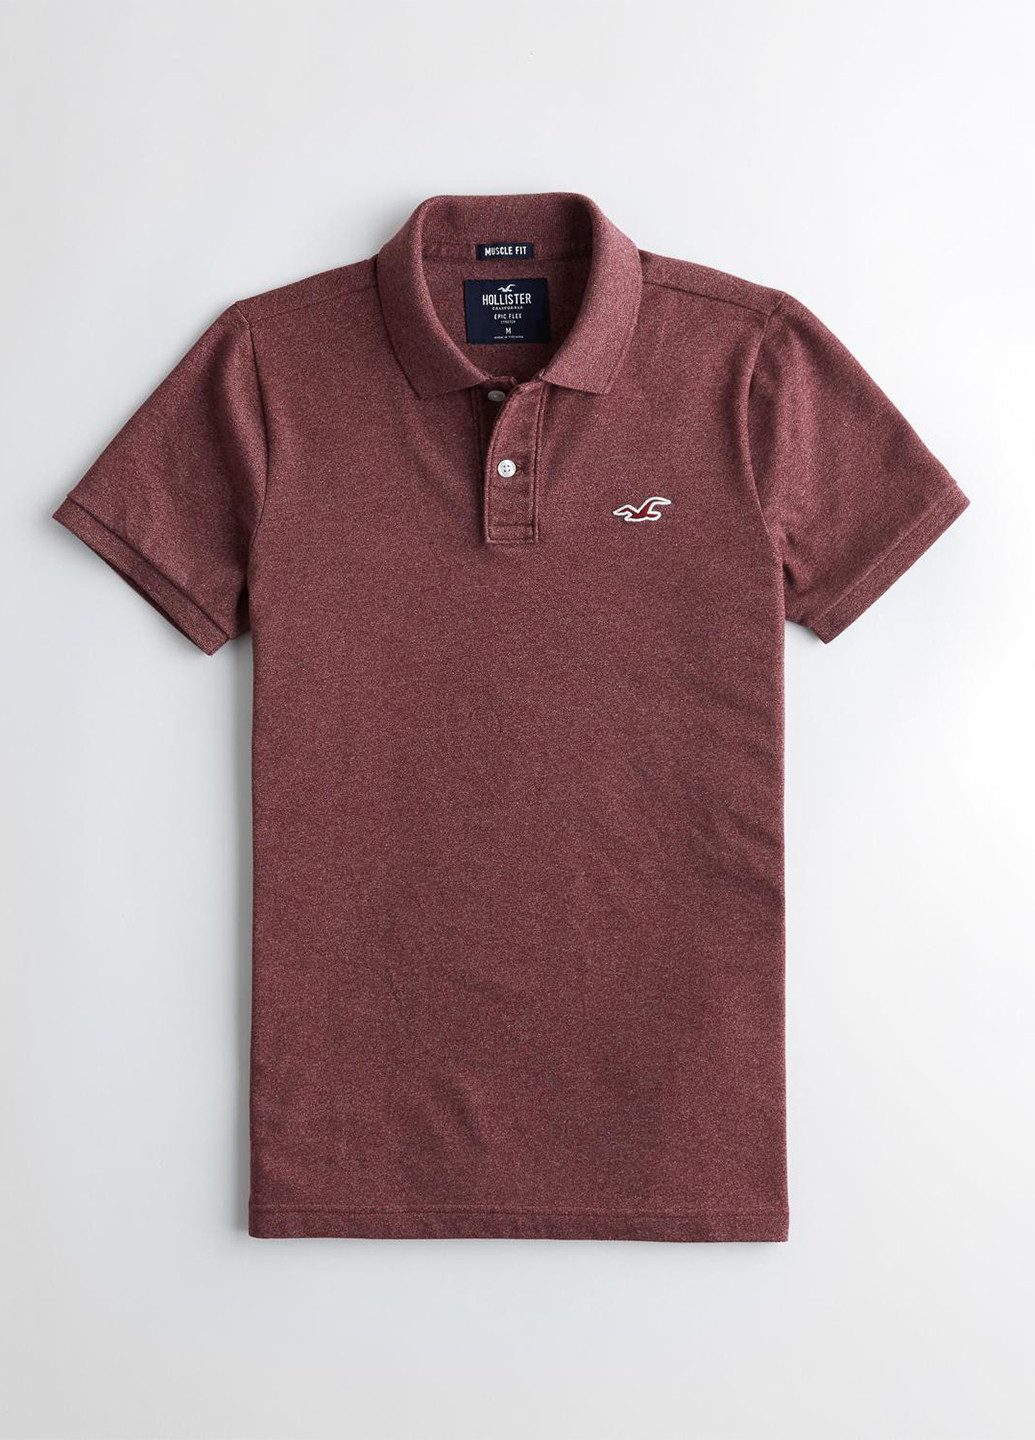 Бордовая футболка-поло для мужчин Hollister меланжевая